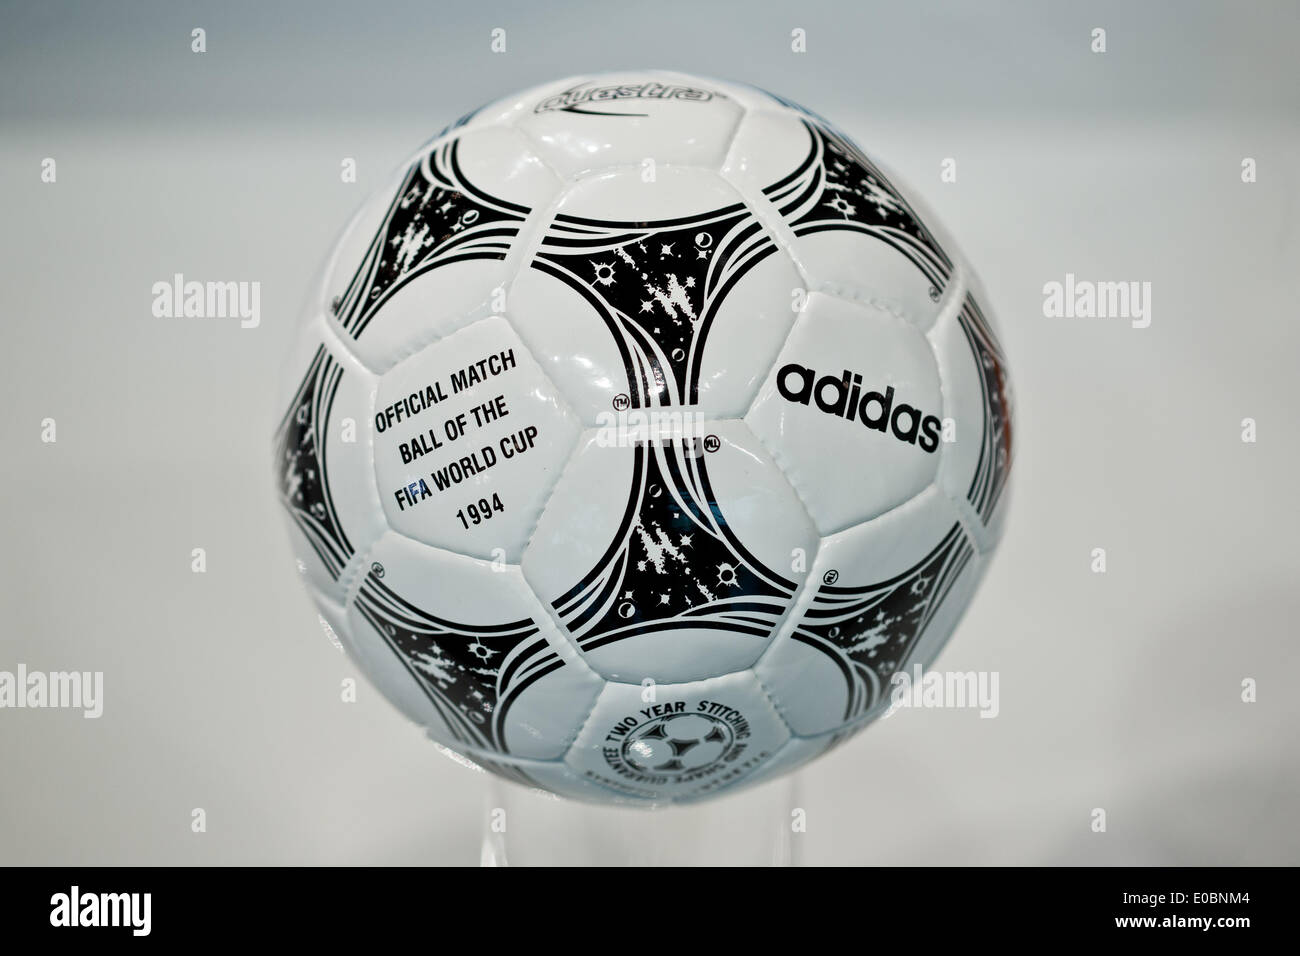 Fürth, Alemania. 08 de mayo 2014. "Questra" balón de fútbol que el balón oficial de la mundial de fútbol de 1994 en Estados Unidos está representado en la reunión